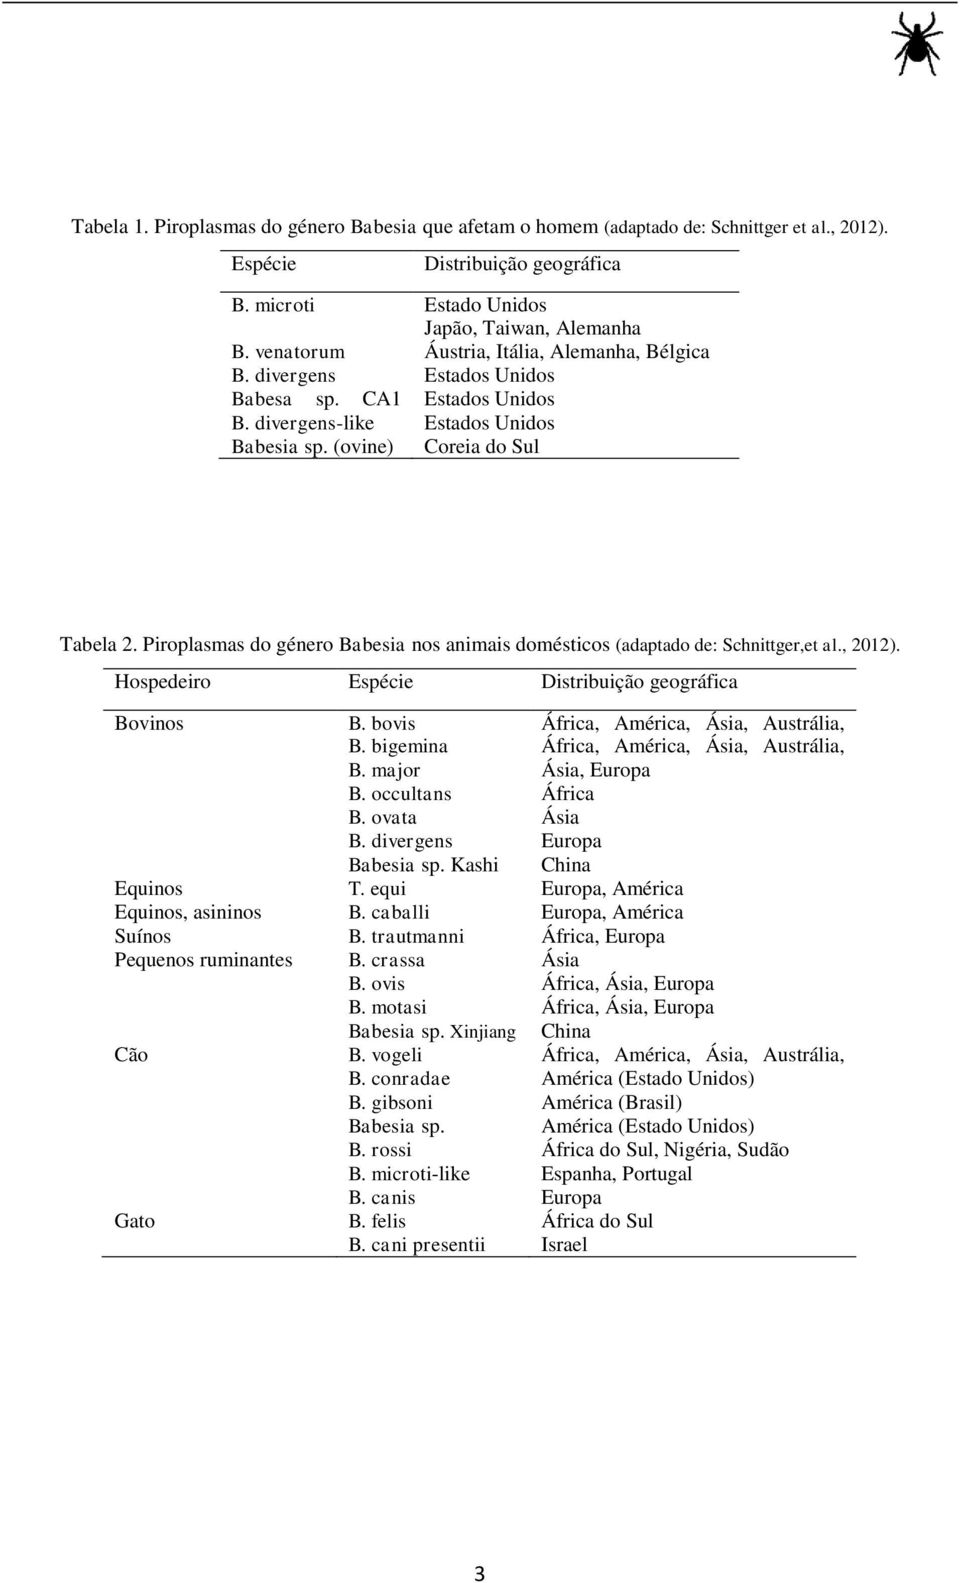 Piroplasmas do género Babesia nos animais domésticos (adaptado de: Schnittger,et al., 2012). Hospedeiro Espécie Distribuição geográfica Bovinos B. bovis África, América, Ásia, Austrália, B.